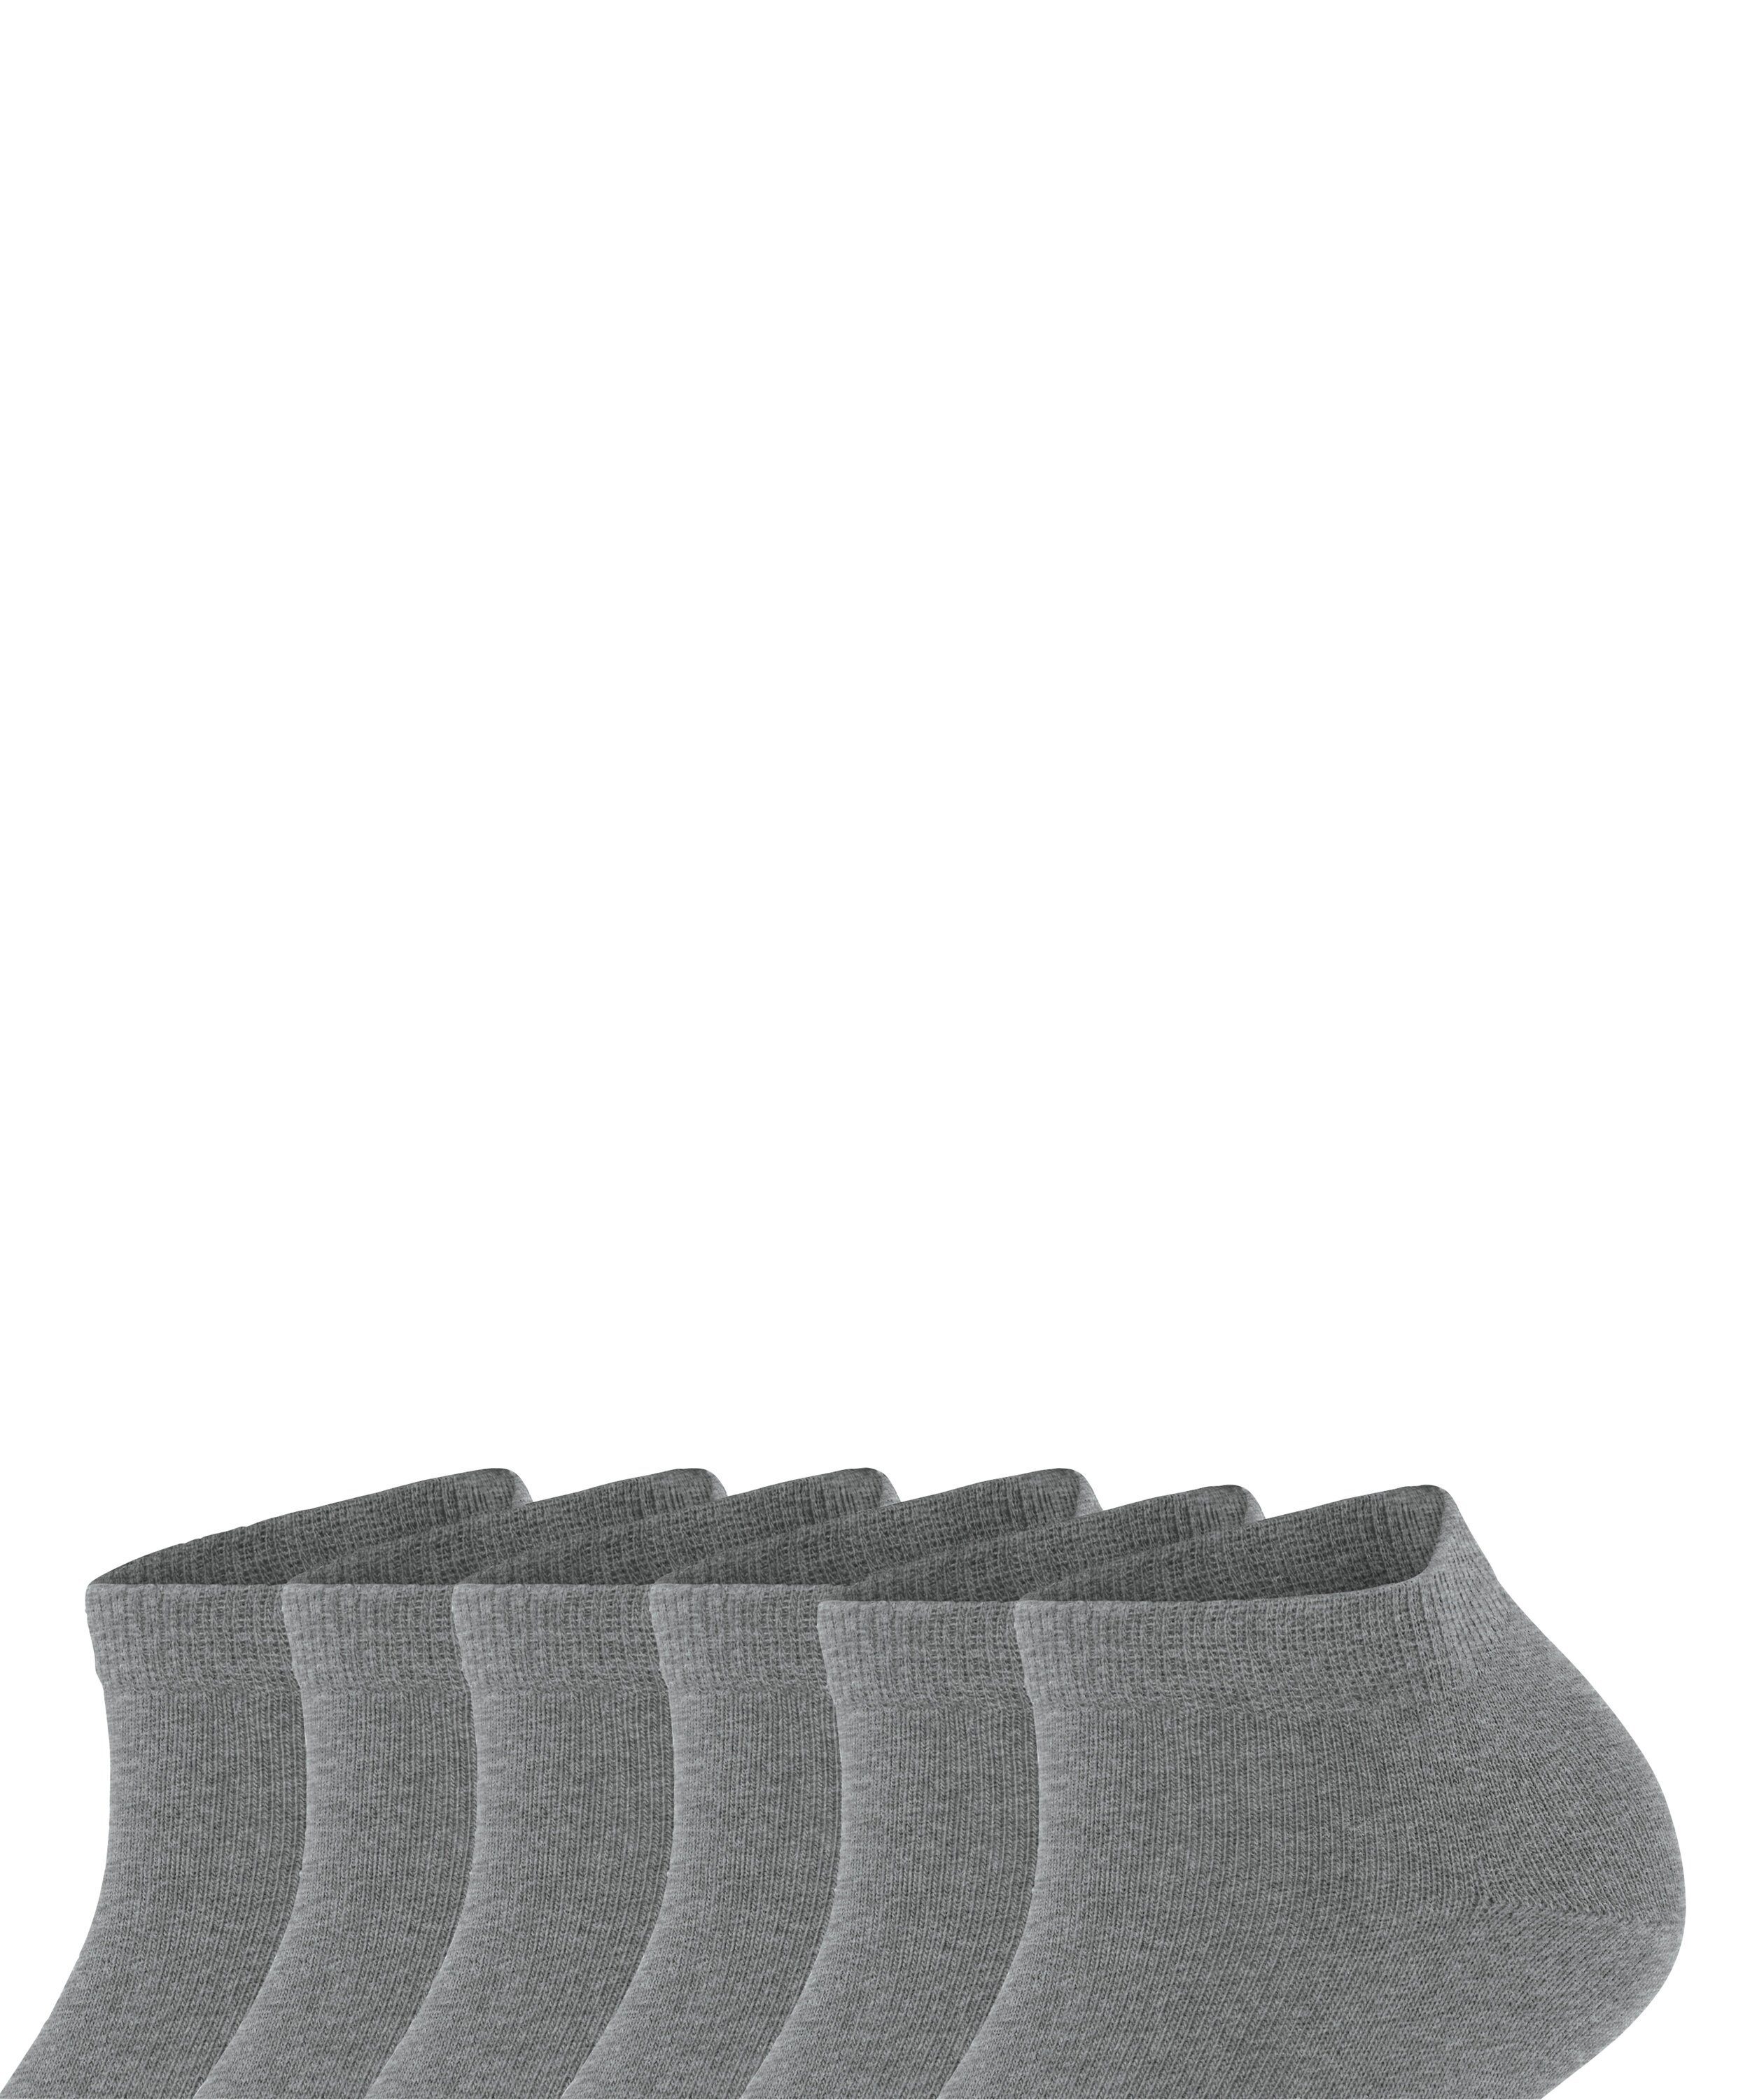 Sneakersocken FALKE aus Set light 6 (6-Paar) Baumwollsneakern Paar 6-Pack (3390) Bundle Happy greymel.